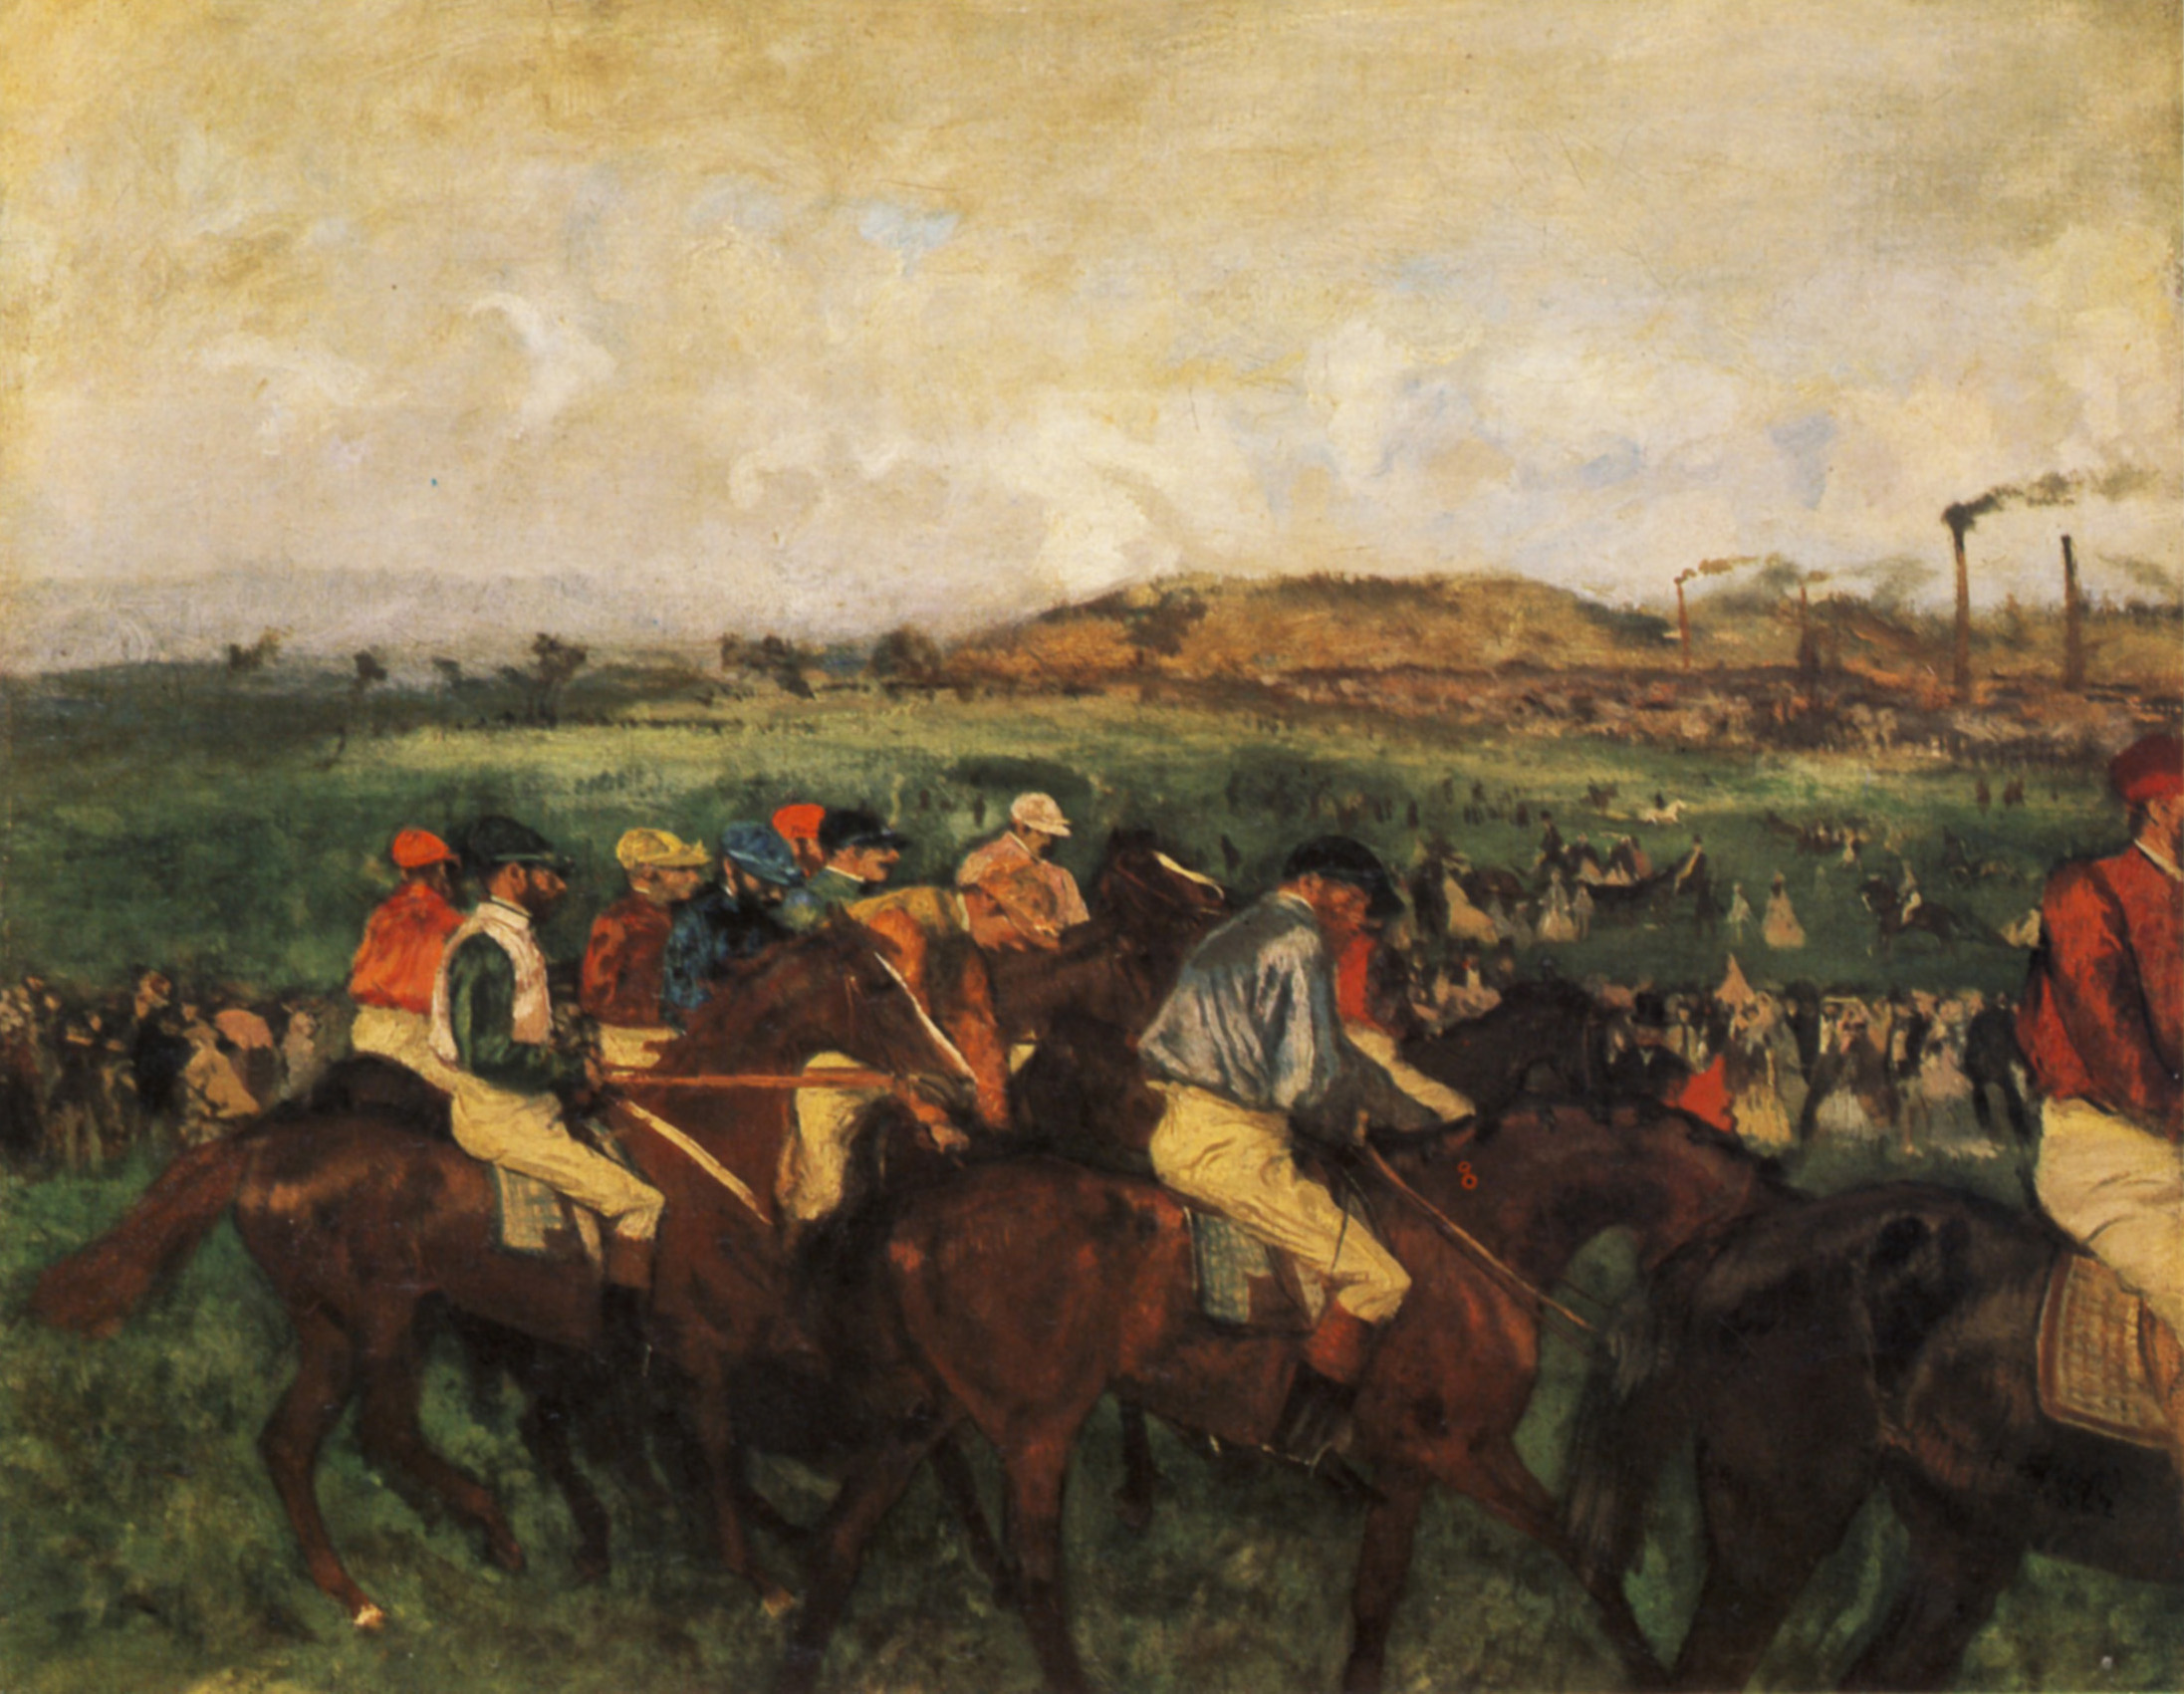 Gentlemen Jockeys before the Start 1862